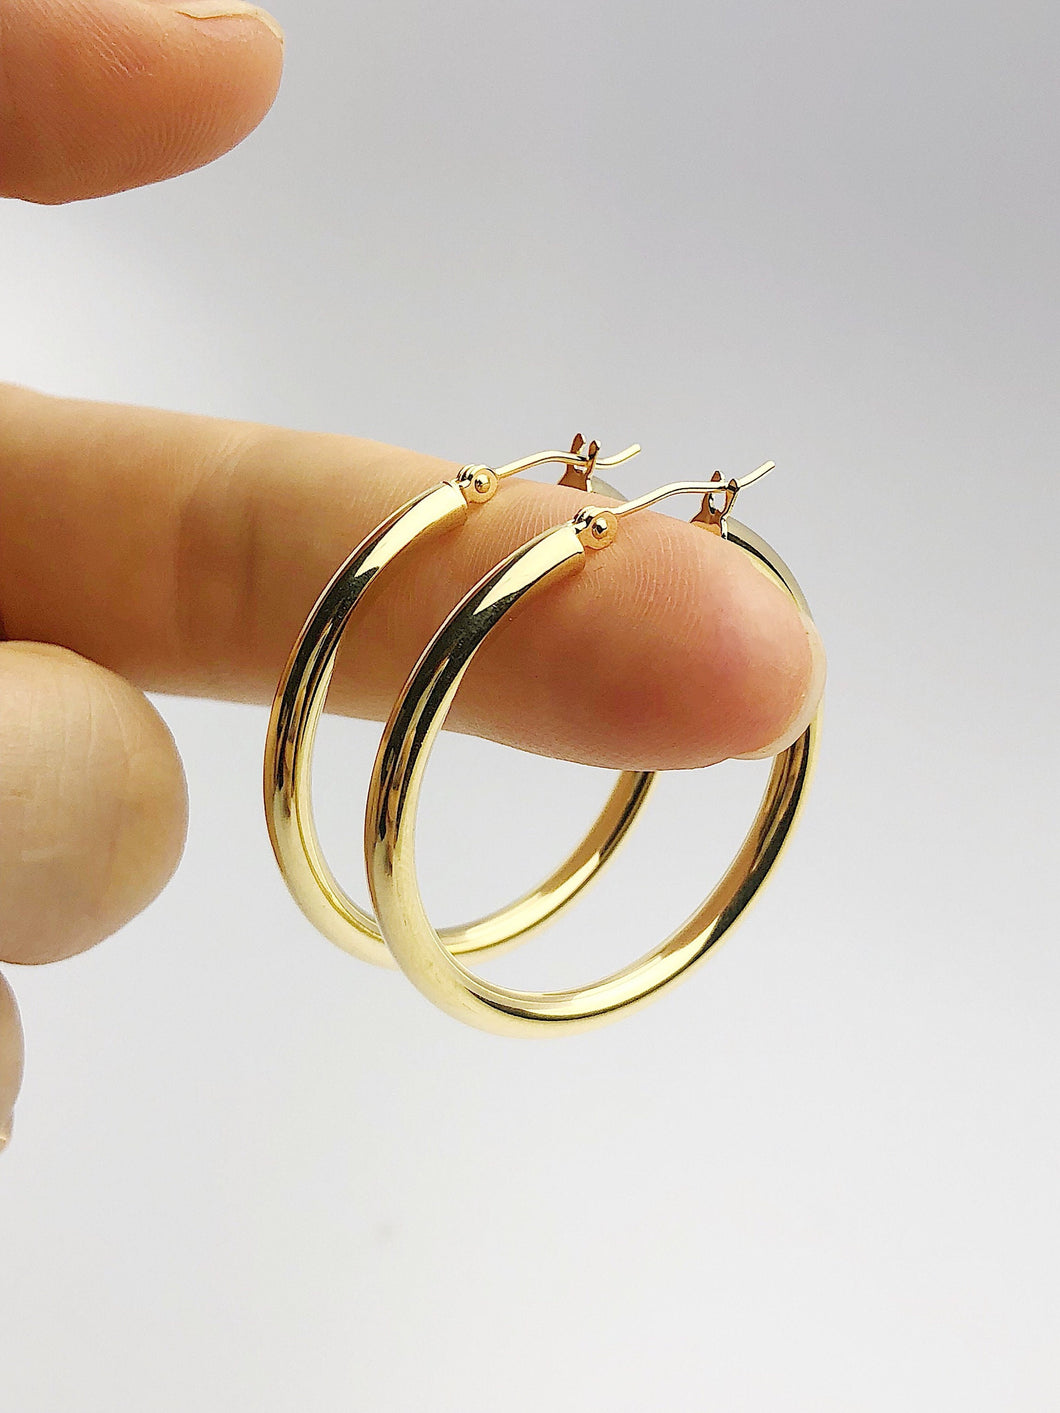 14k 3mm Gold Hoop Earrings - 1 1/4